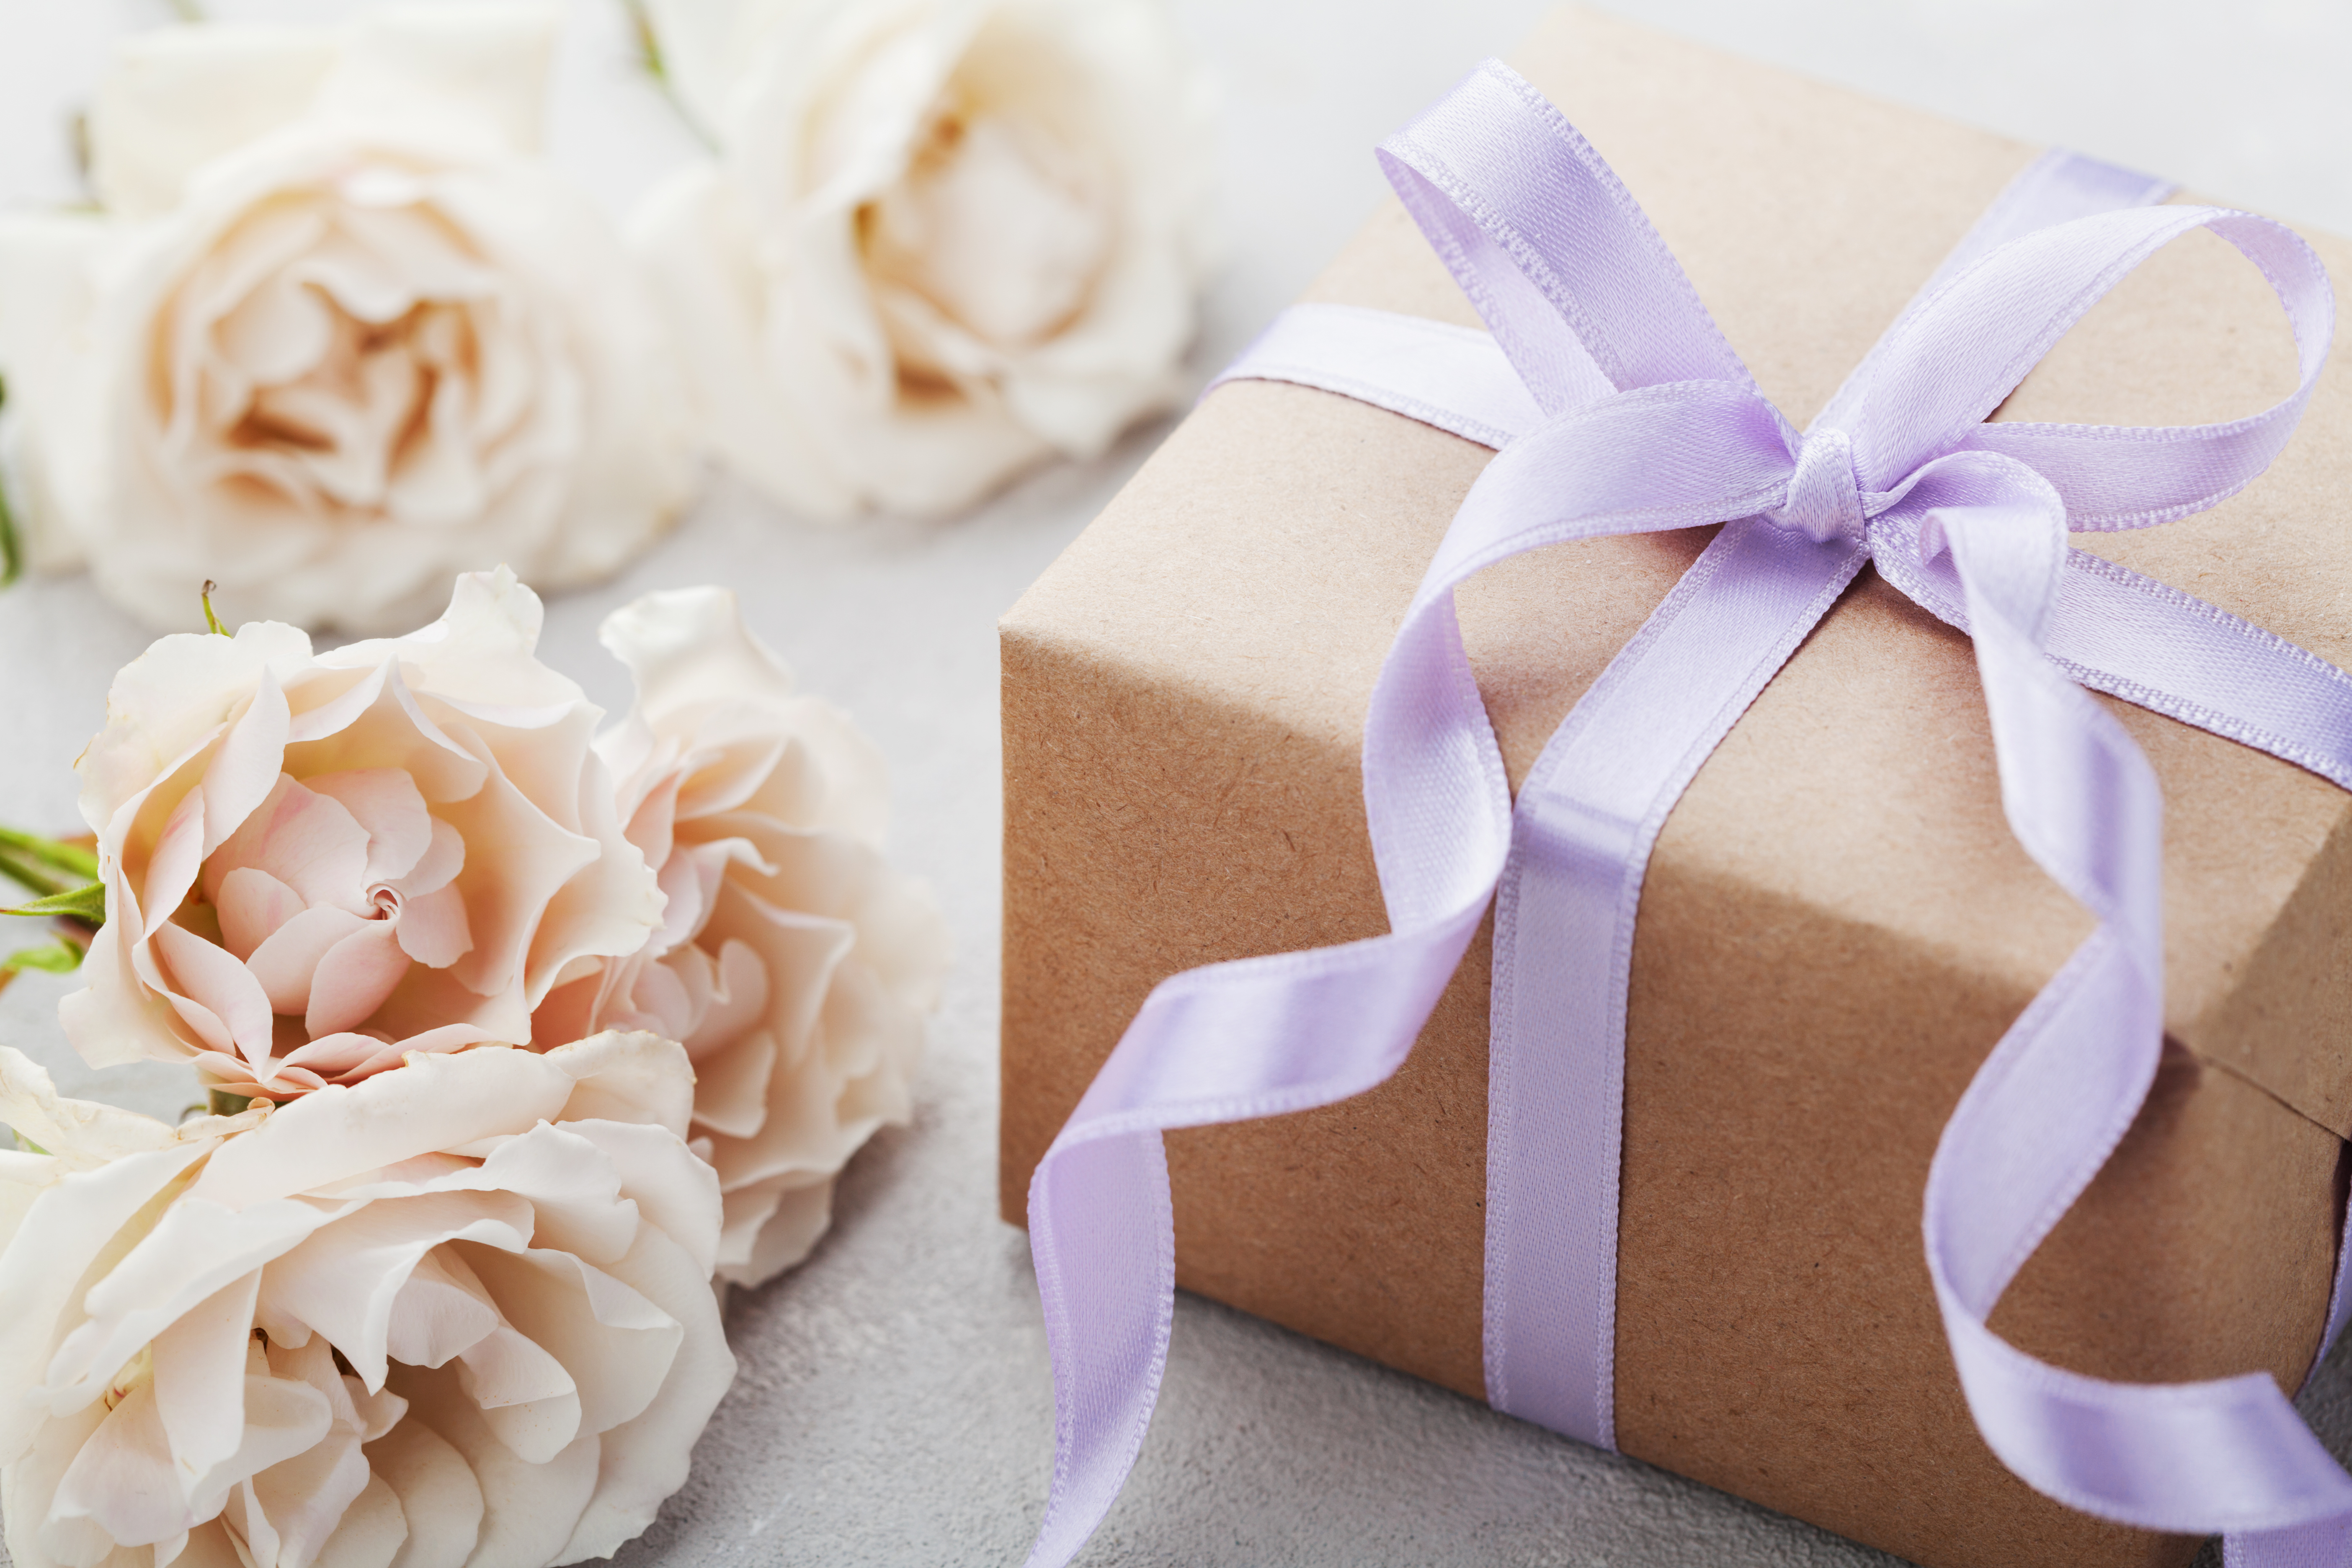 Un paquet cadeau emballé | Source : Shutterstock